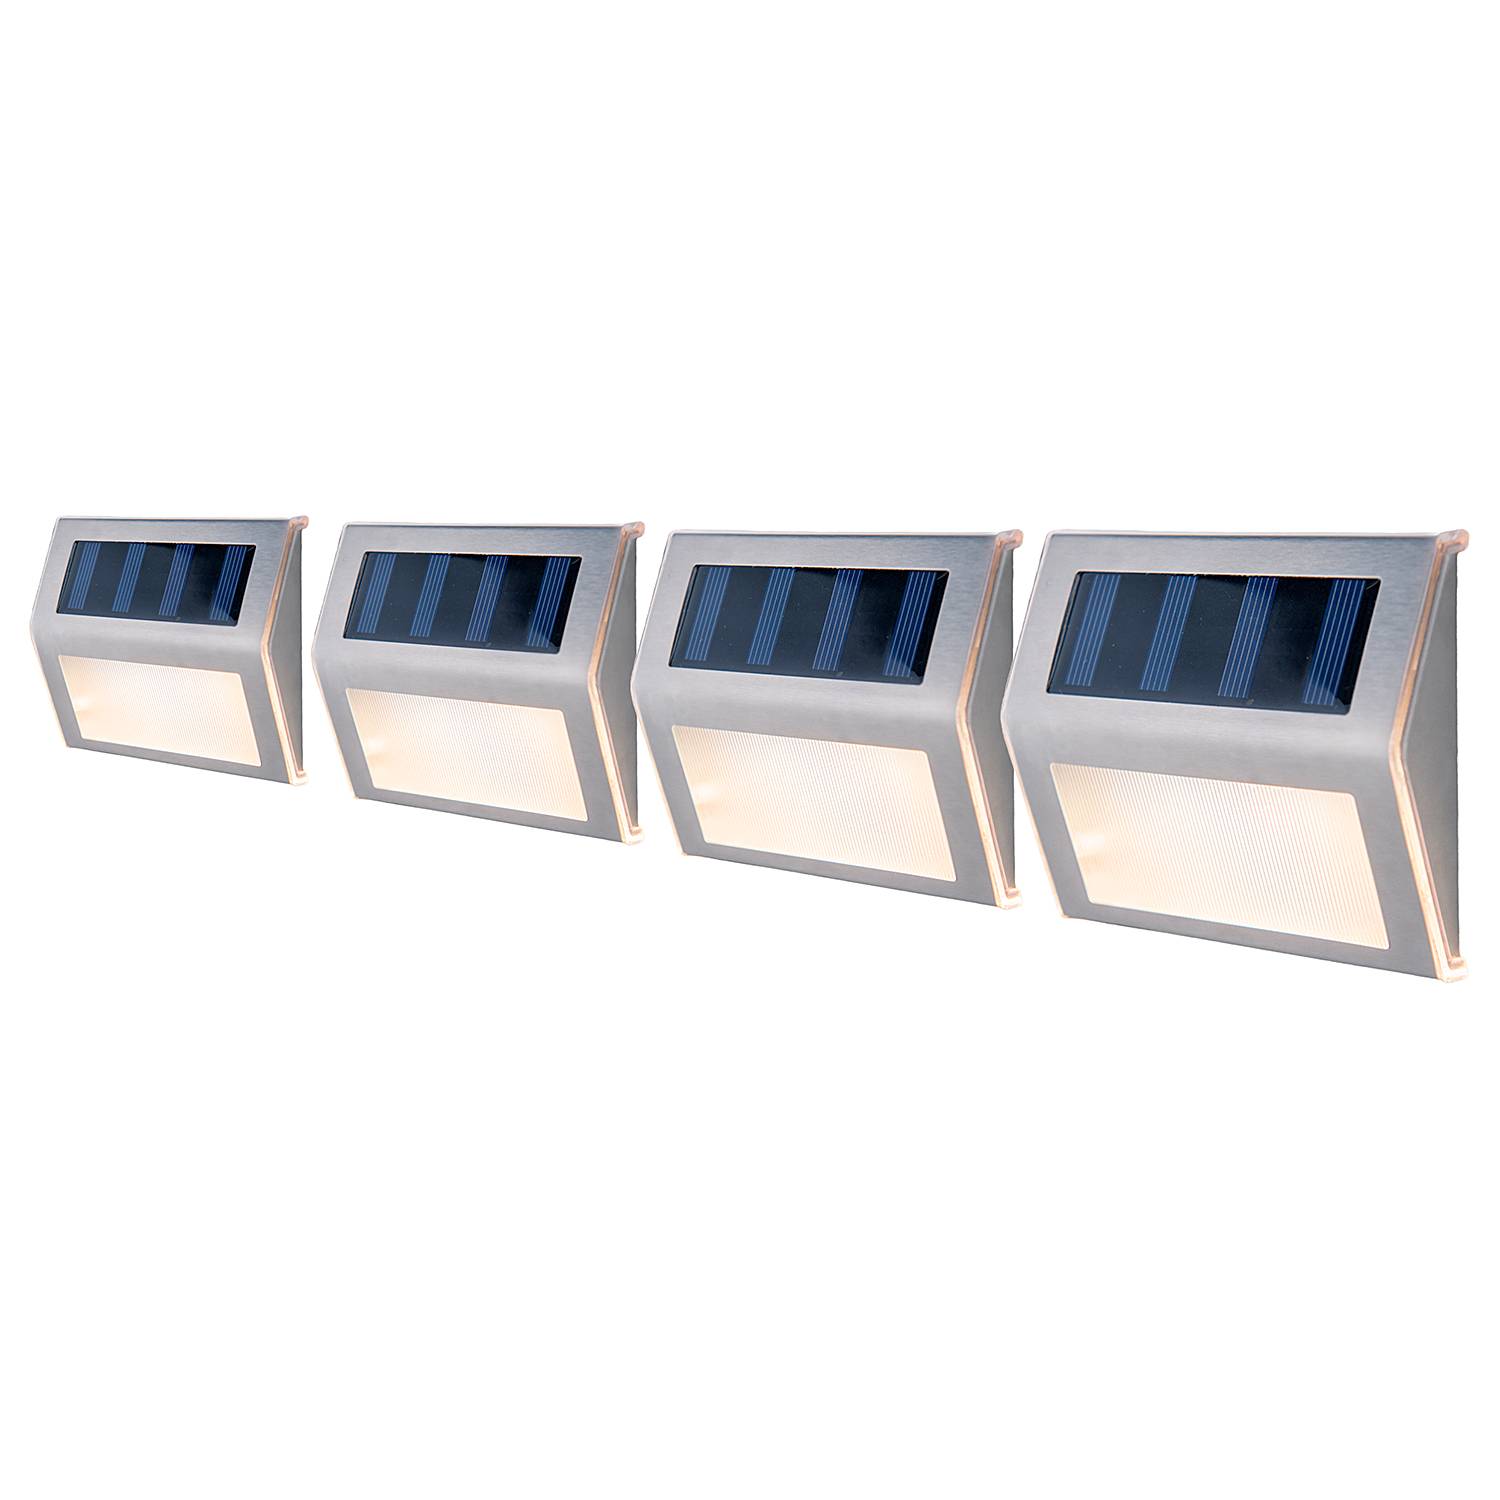 LED-Solar Wegeleuchte Wismar 4er-Set kaufen | home24